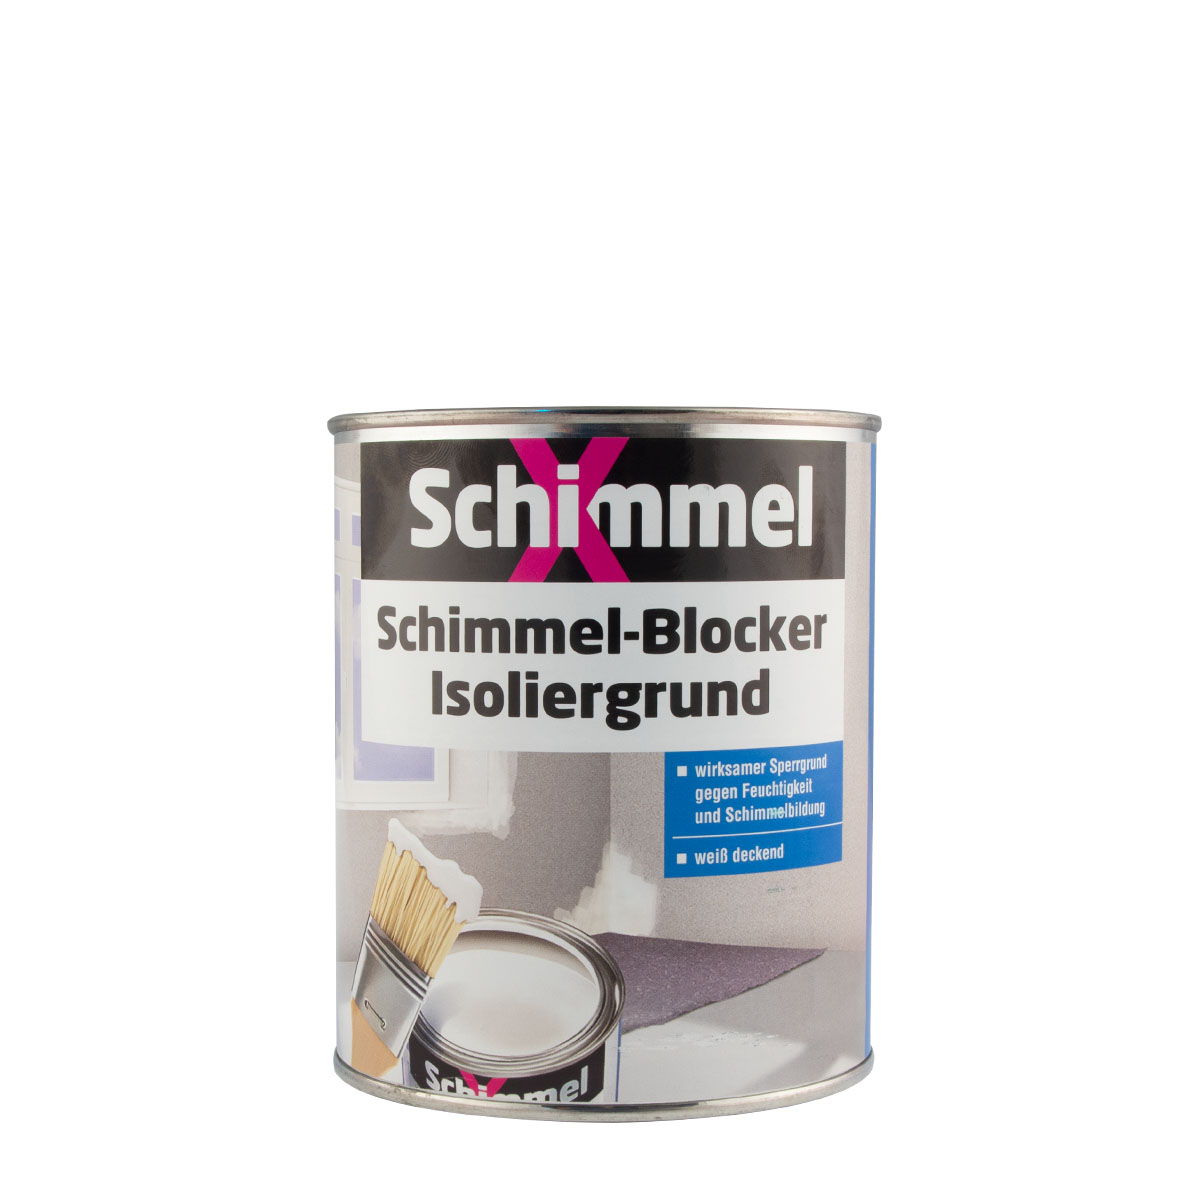 SchimmelX Schimmel-Blocker Isoliergrund 750ml weiss